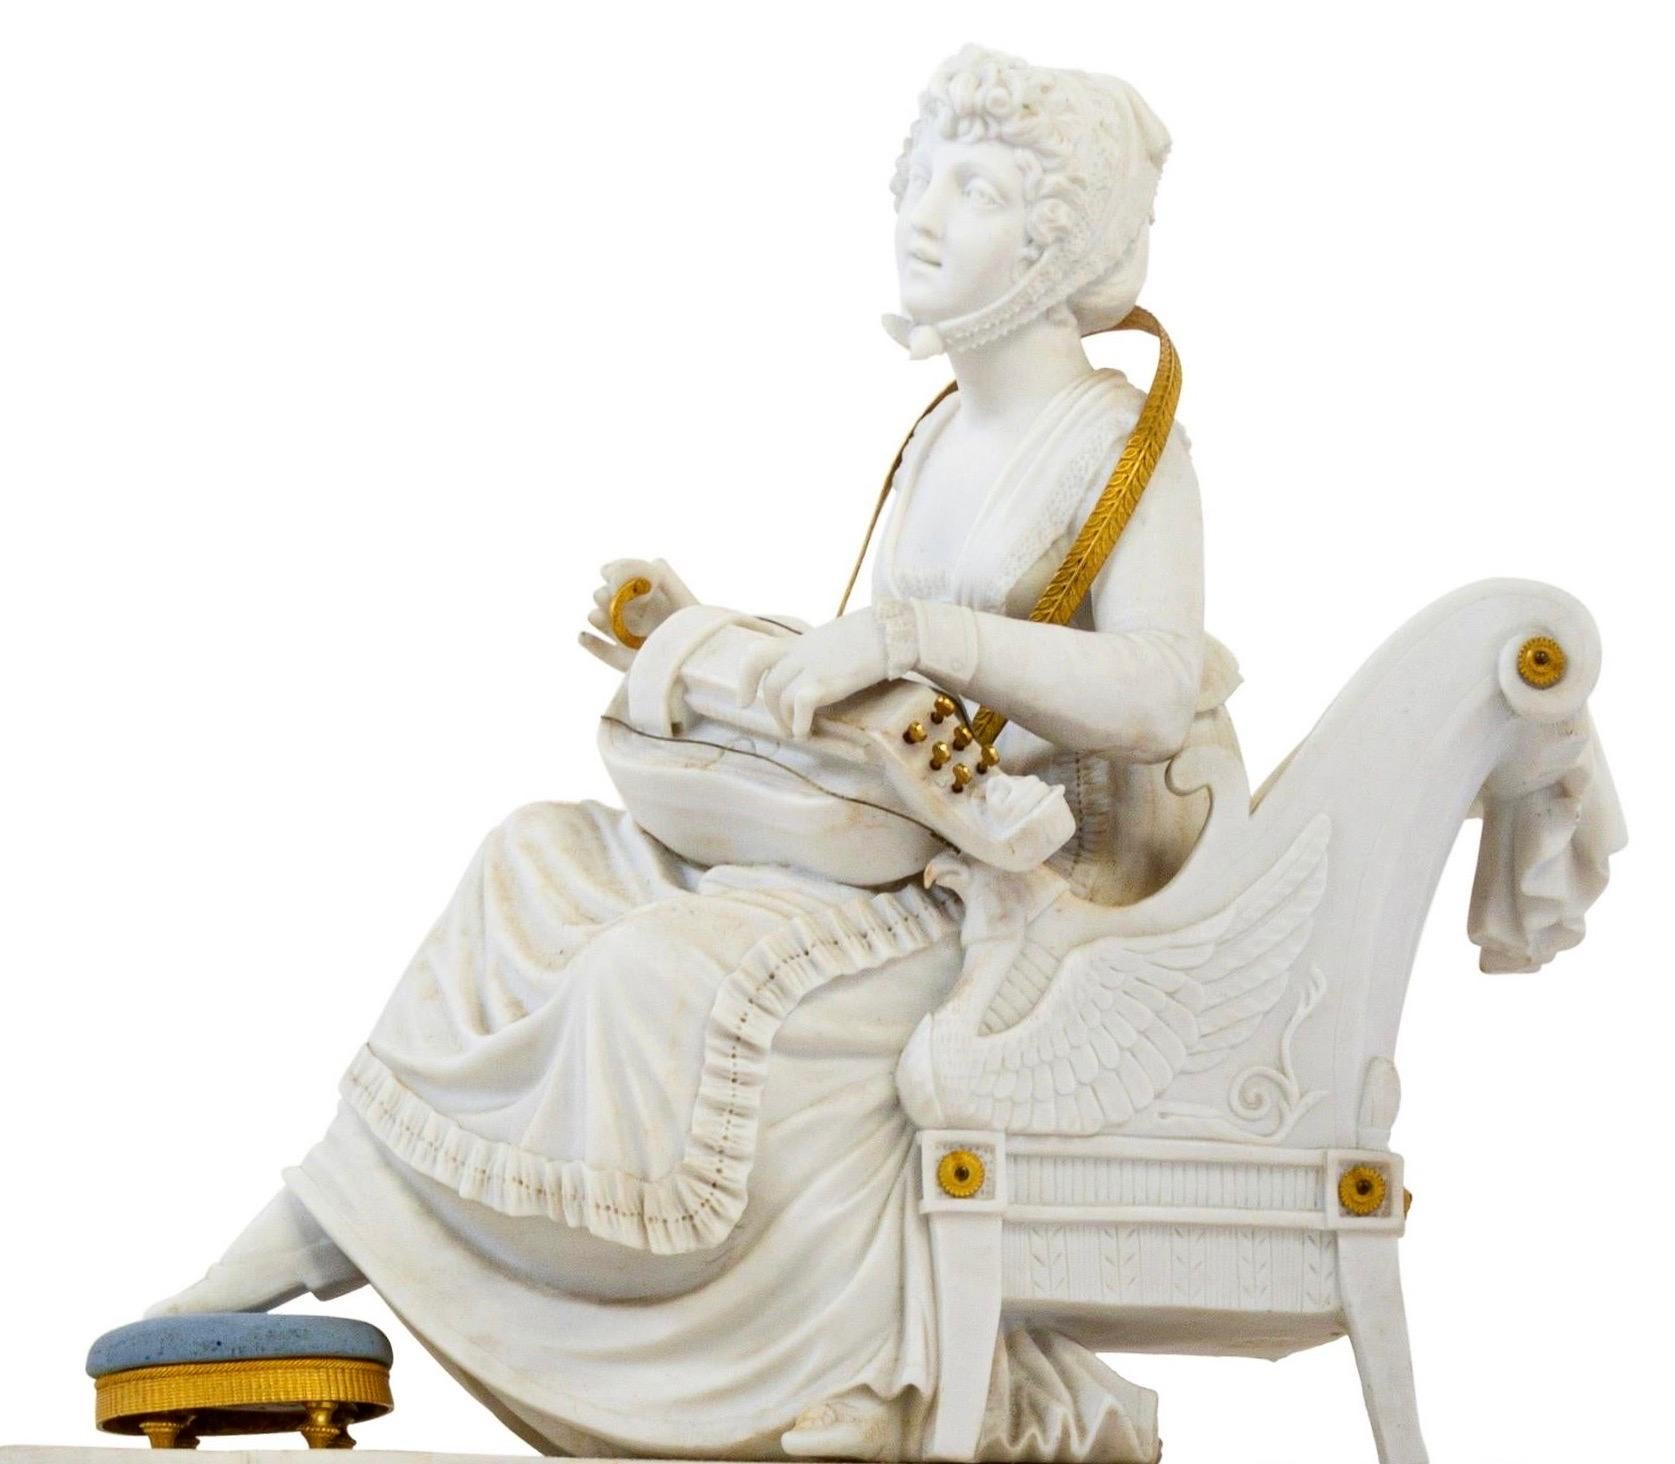 Directoire-Uhr aus dem frühen 19. Jahrhundert, die Sèvres zugeschrieben wird. Wunderschön geformtes Biskuitporzellan in Weiß und Wedgwood blauem Jaspis. Ormolu-Beschläge. Eine sitzende Dame in neoklassischer Kleidung, die in einem Sessel mit